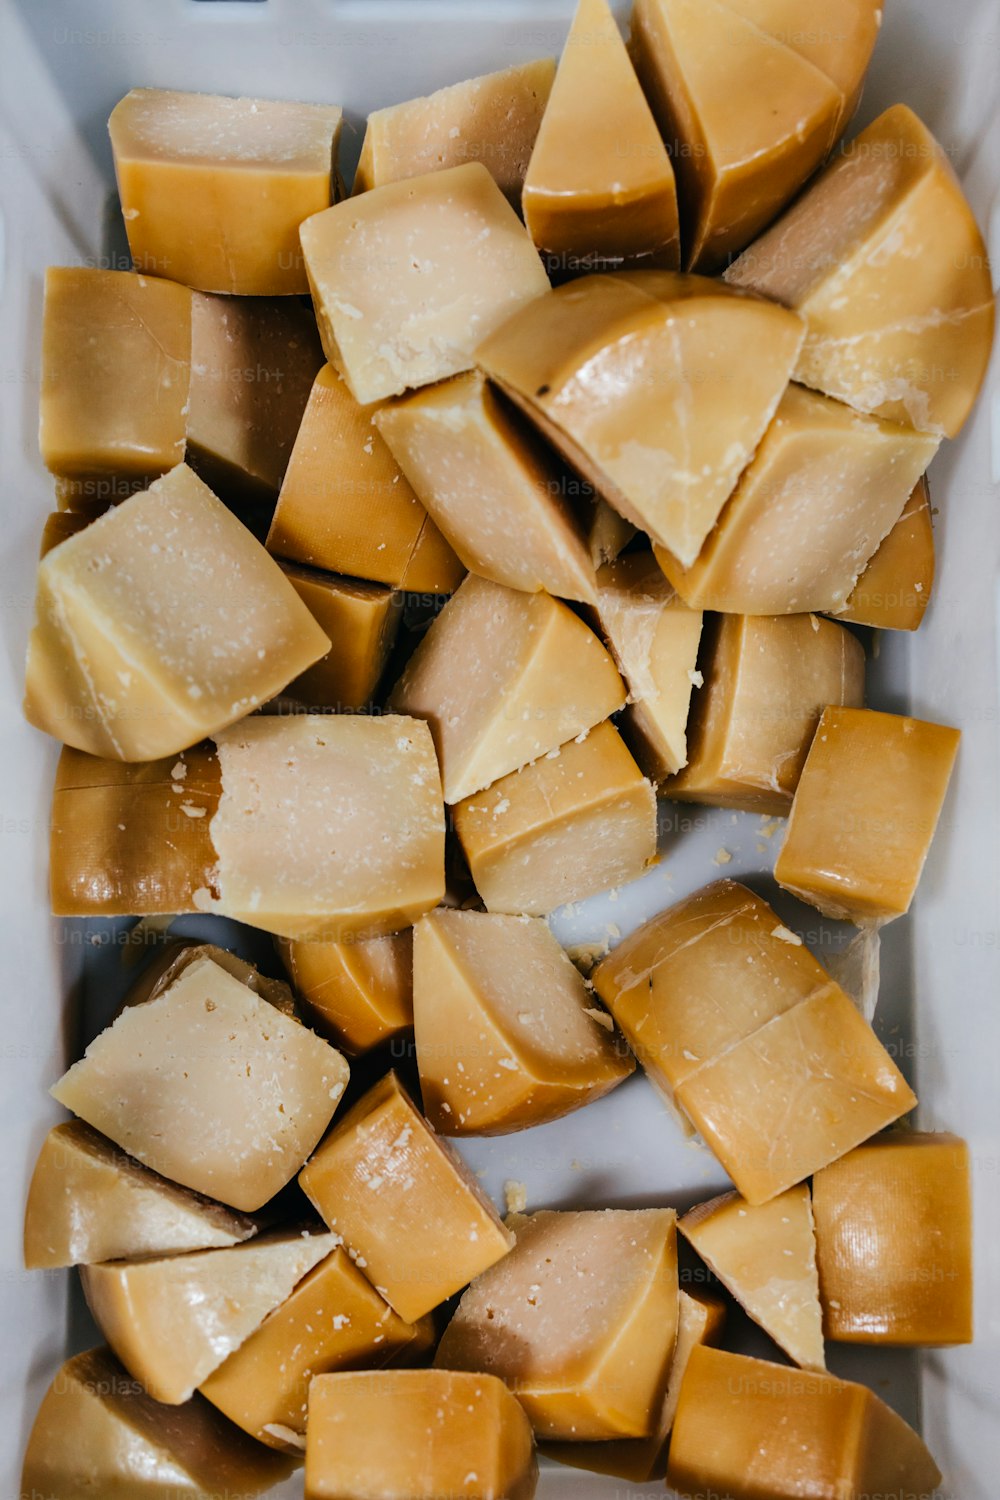 Dettagli dal tradizionale caseificio e caseificio. Pezzi di delizioso formaggio a fette pronti per il confezionamento.